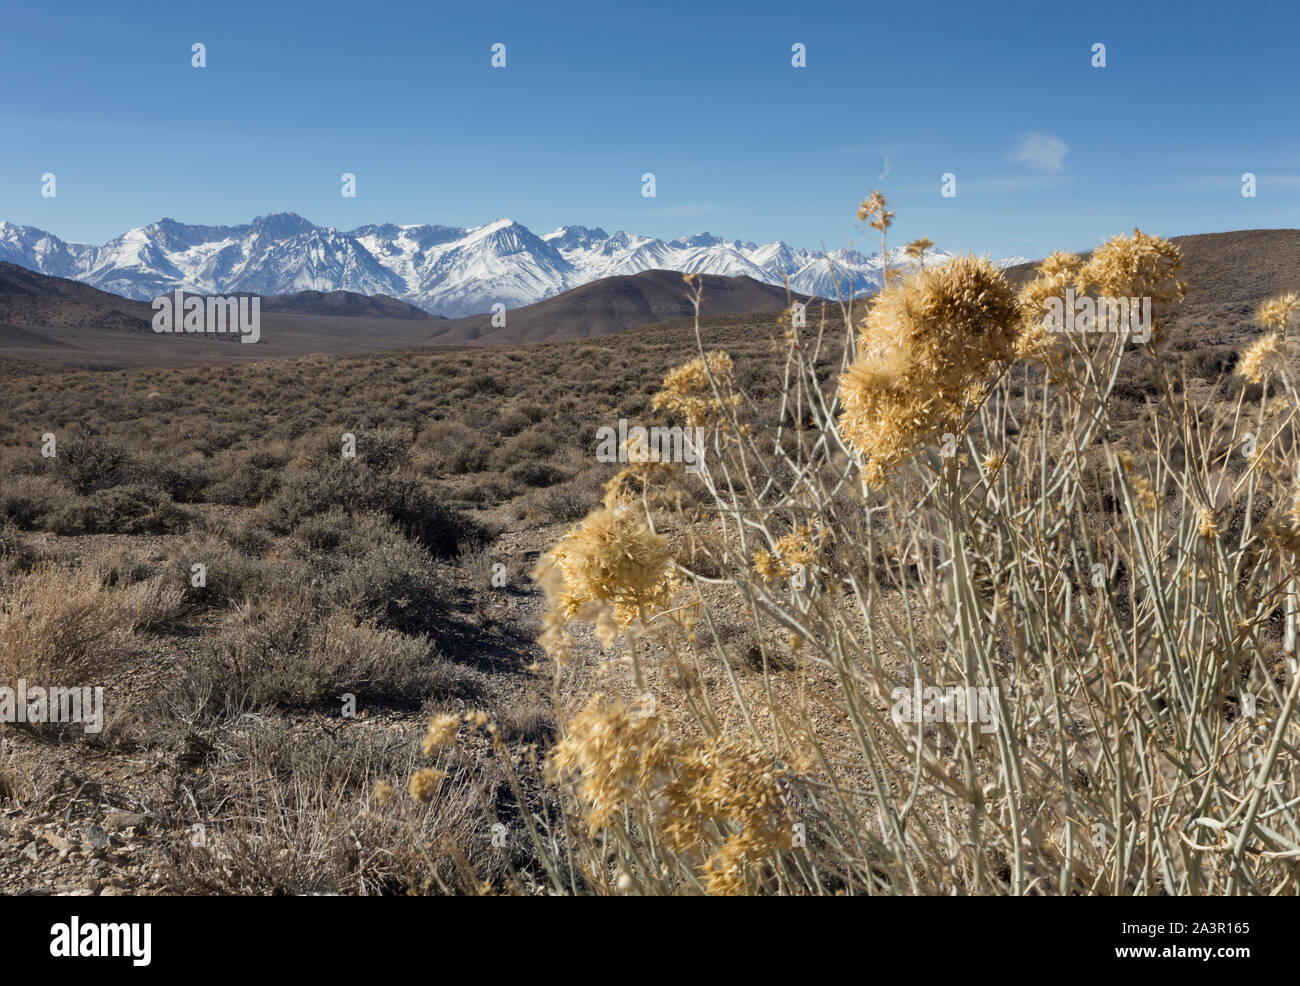 Un arido deserto paesaggio sostenuta da montagne coperte di neve. Foto Stock